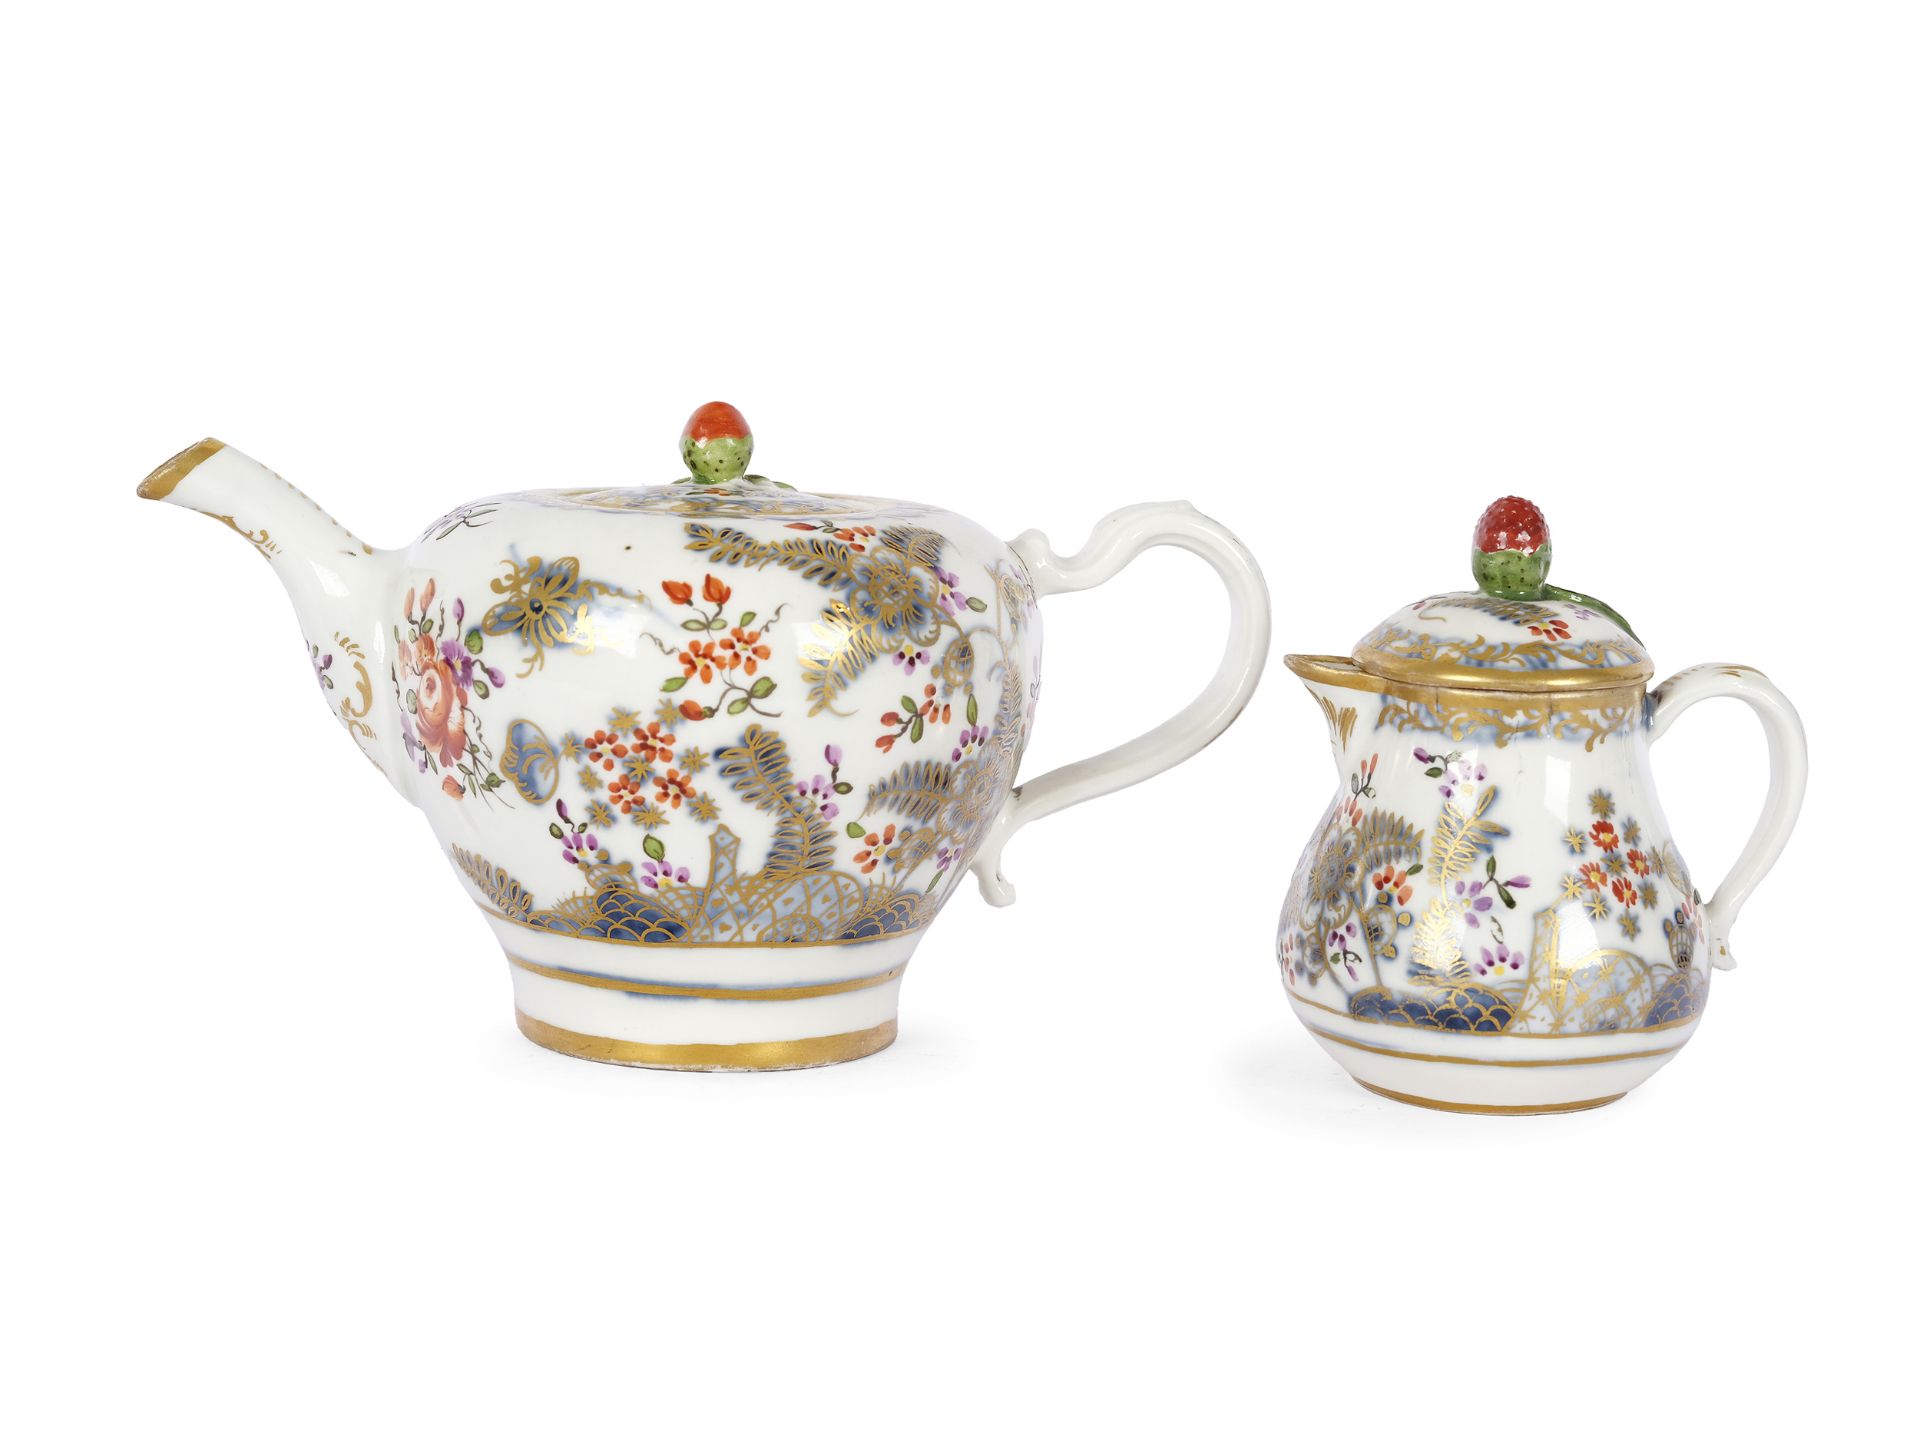 Teapot & milk jug, Old Vienna, 18th century